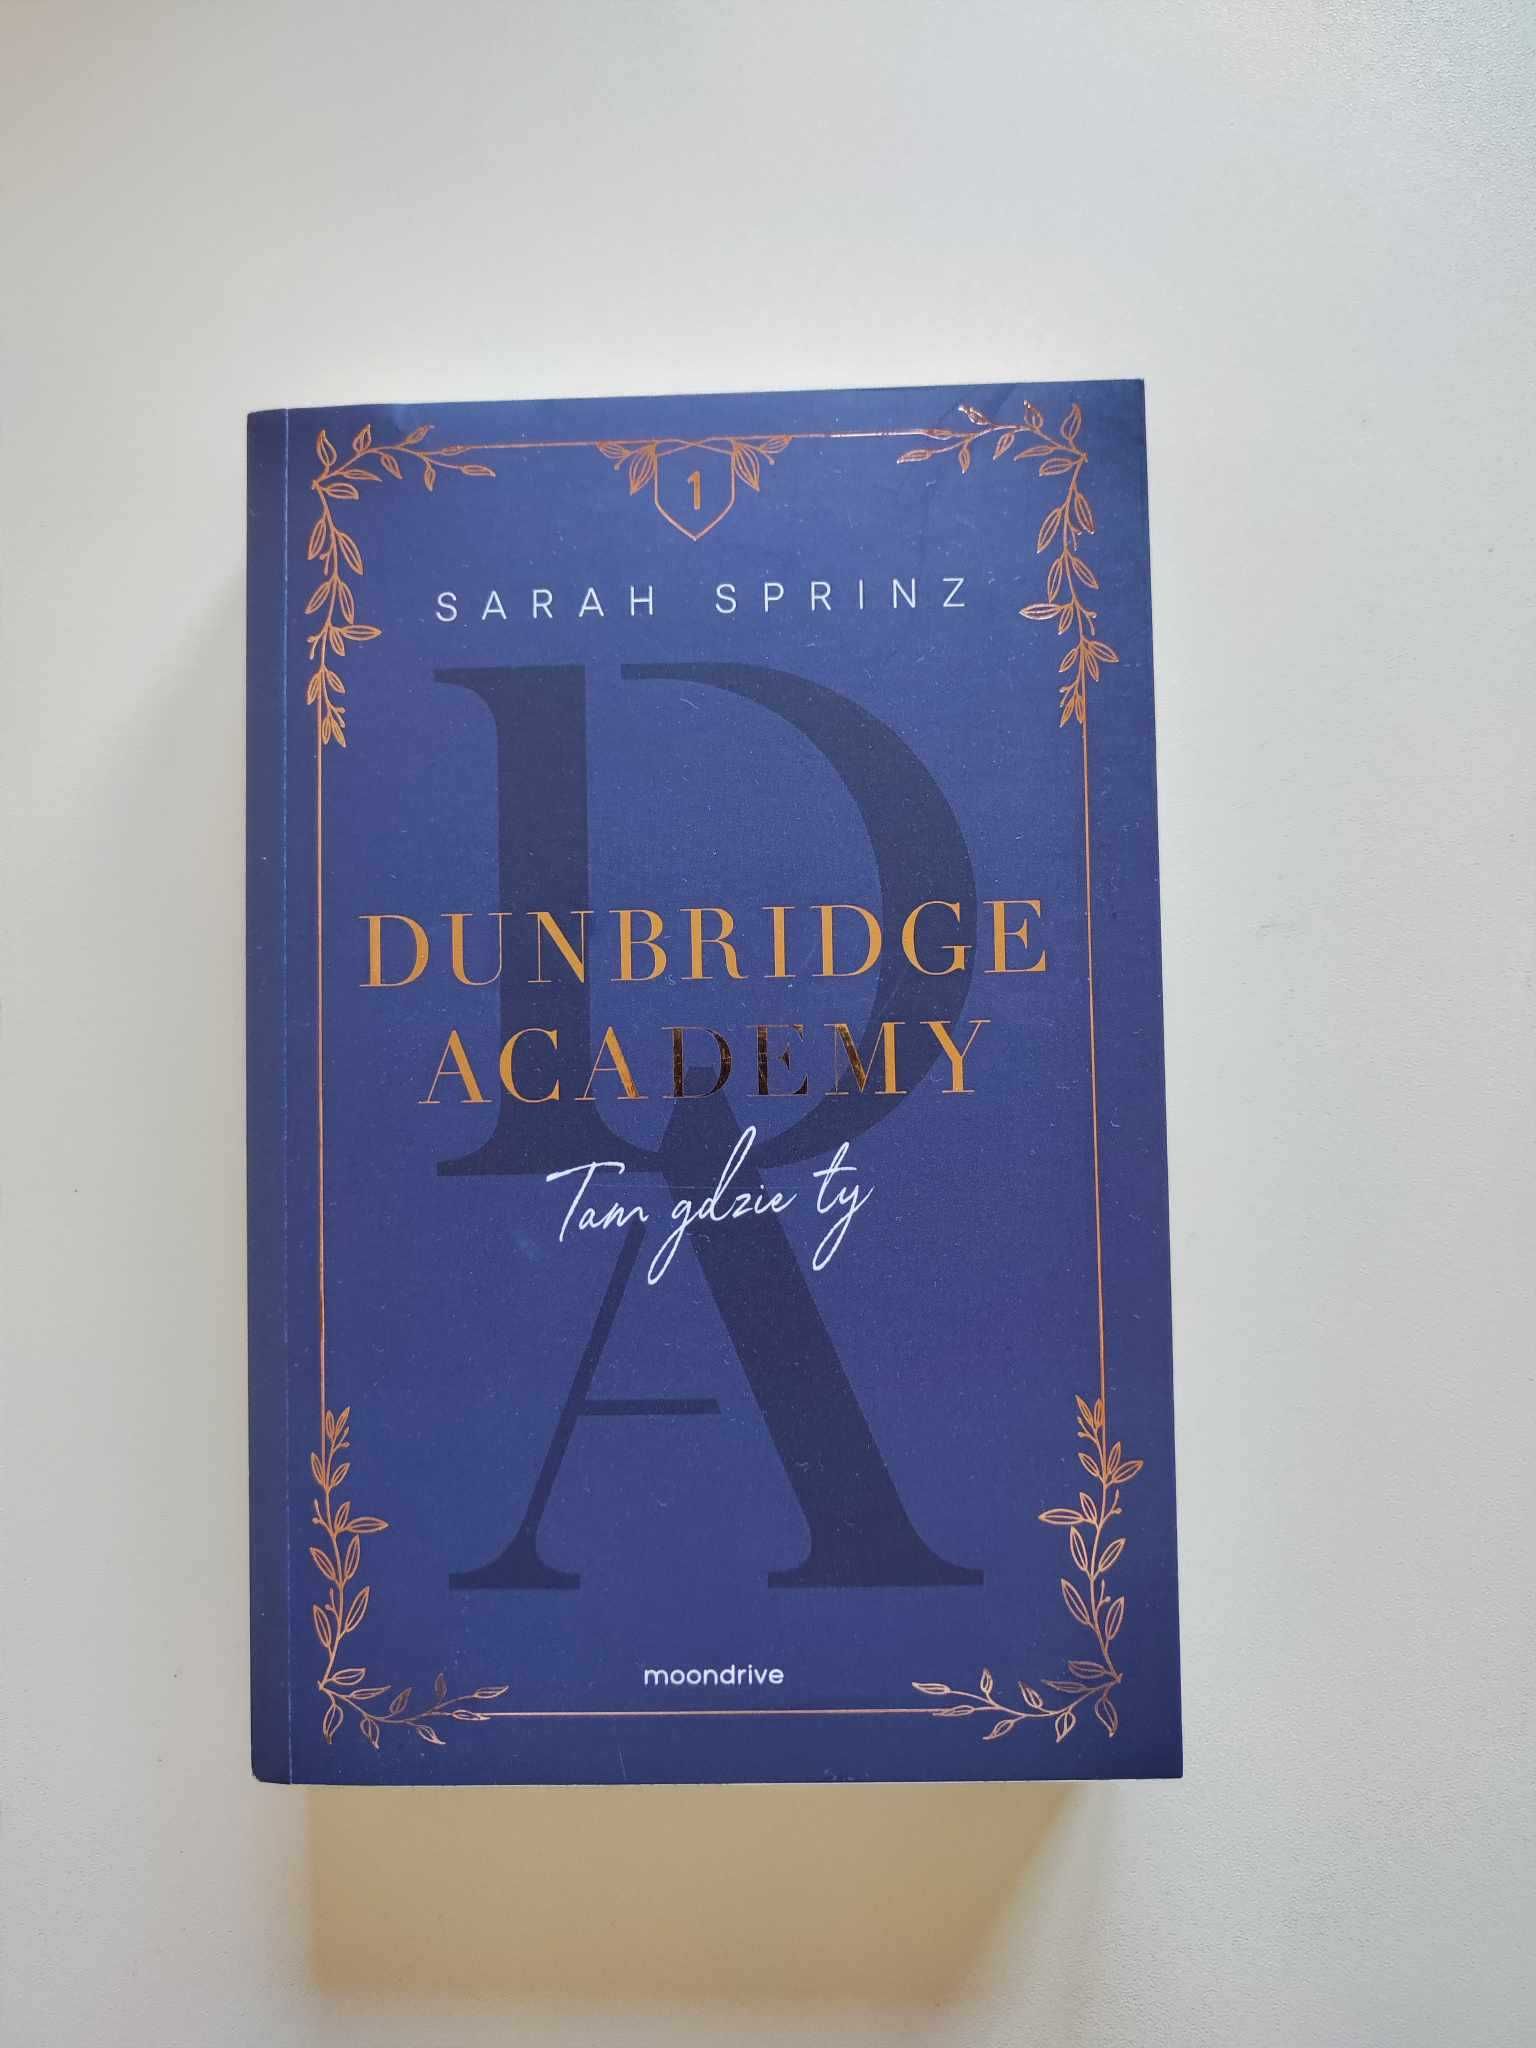 Sarah Sprinz "Dunbridge Acadamy" tom 1